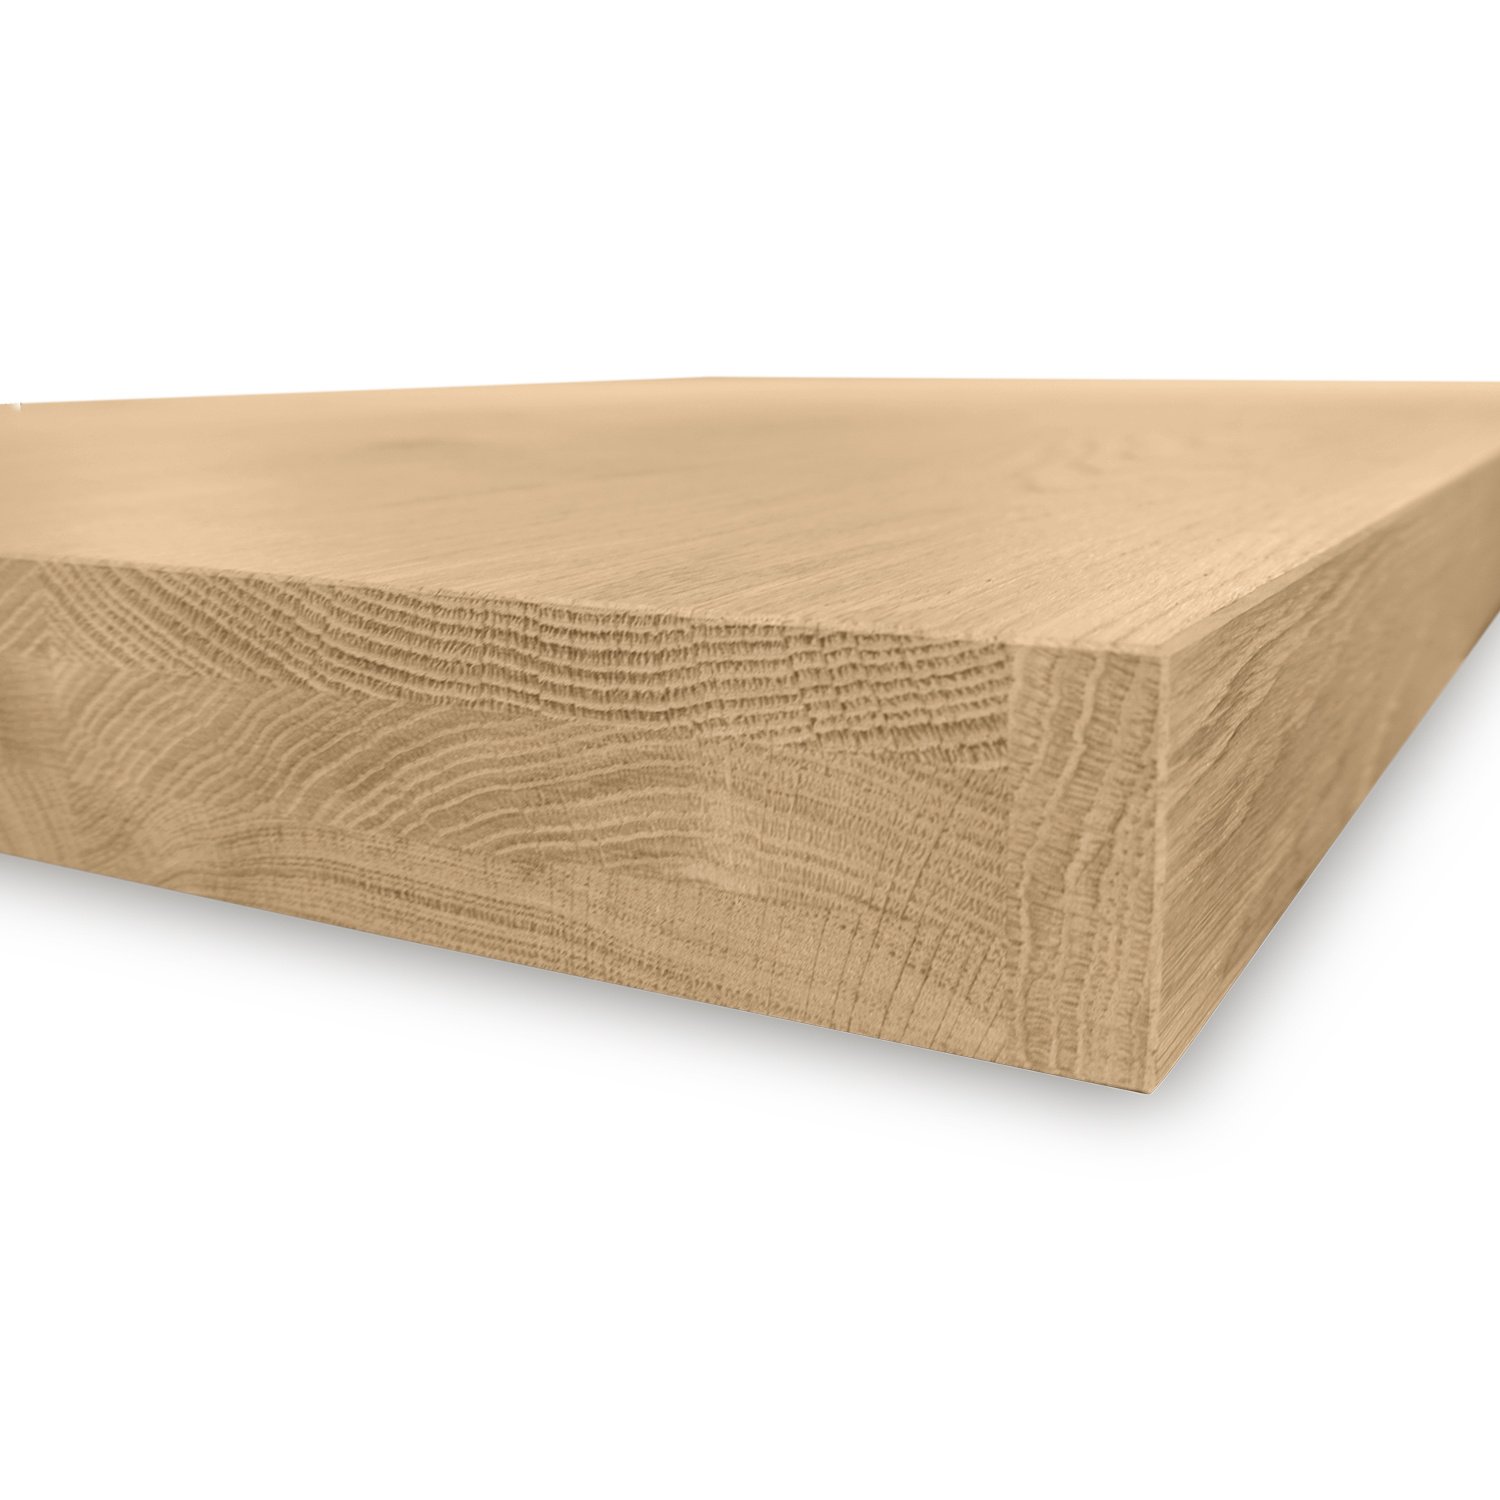  Tischplatte Eiche nach Maß - 6 cm dick (2-lagig) - Eichenholz A-Qualität - Eiche Tischplatte - verleimt & künstlich getrocknet (HF 8-12%) - 50-120x50-260 cm